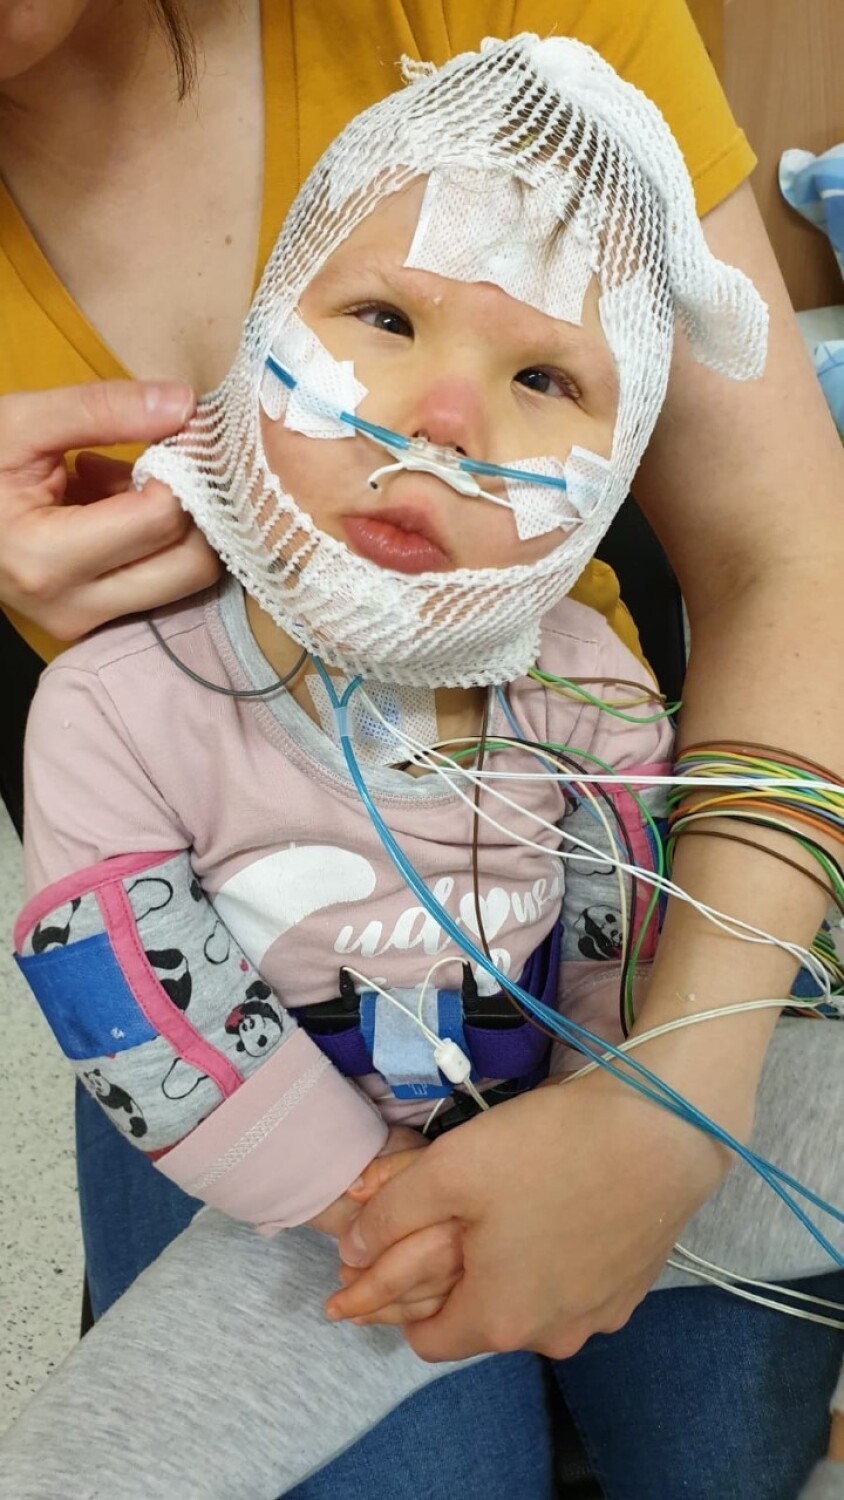 4-letnia Ala-Calineczka potrzebuje pomocy! Zbiera pieniądze na operację, dzięki której będzie mogła chodzić